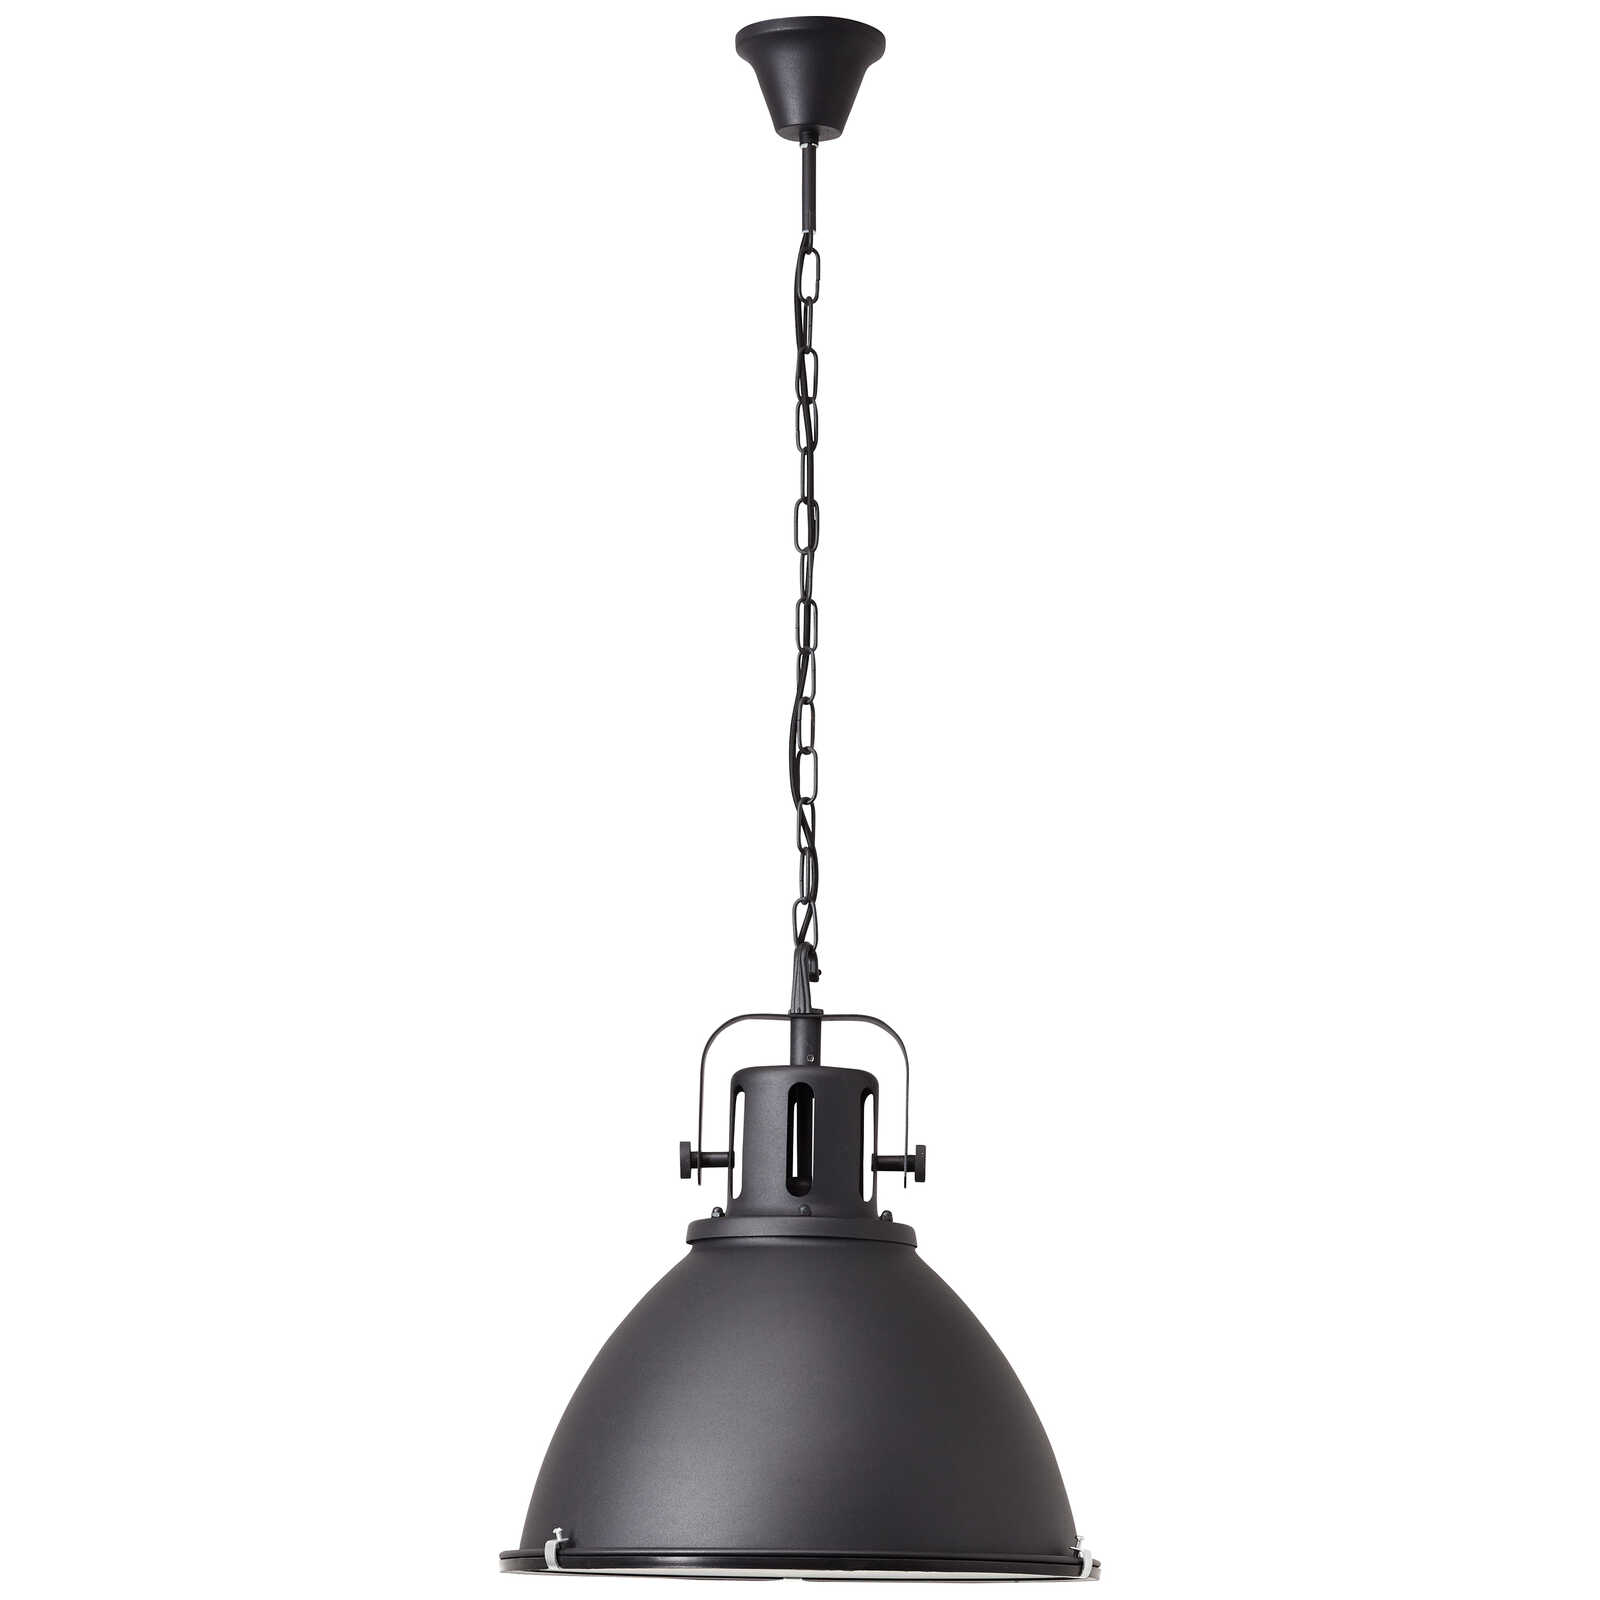             Metalen hanglamp - Josefine 6 - Zwart
        